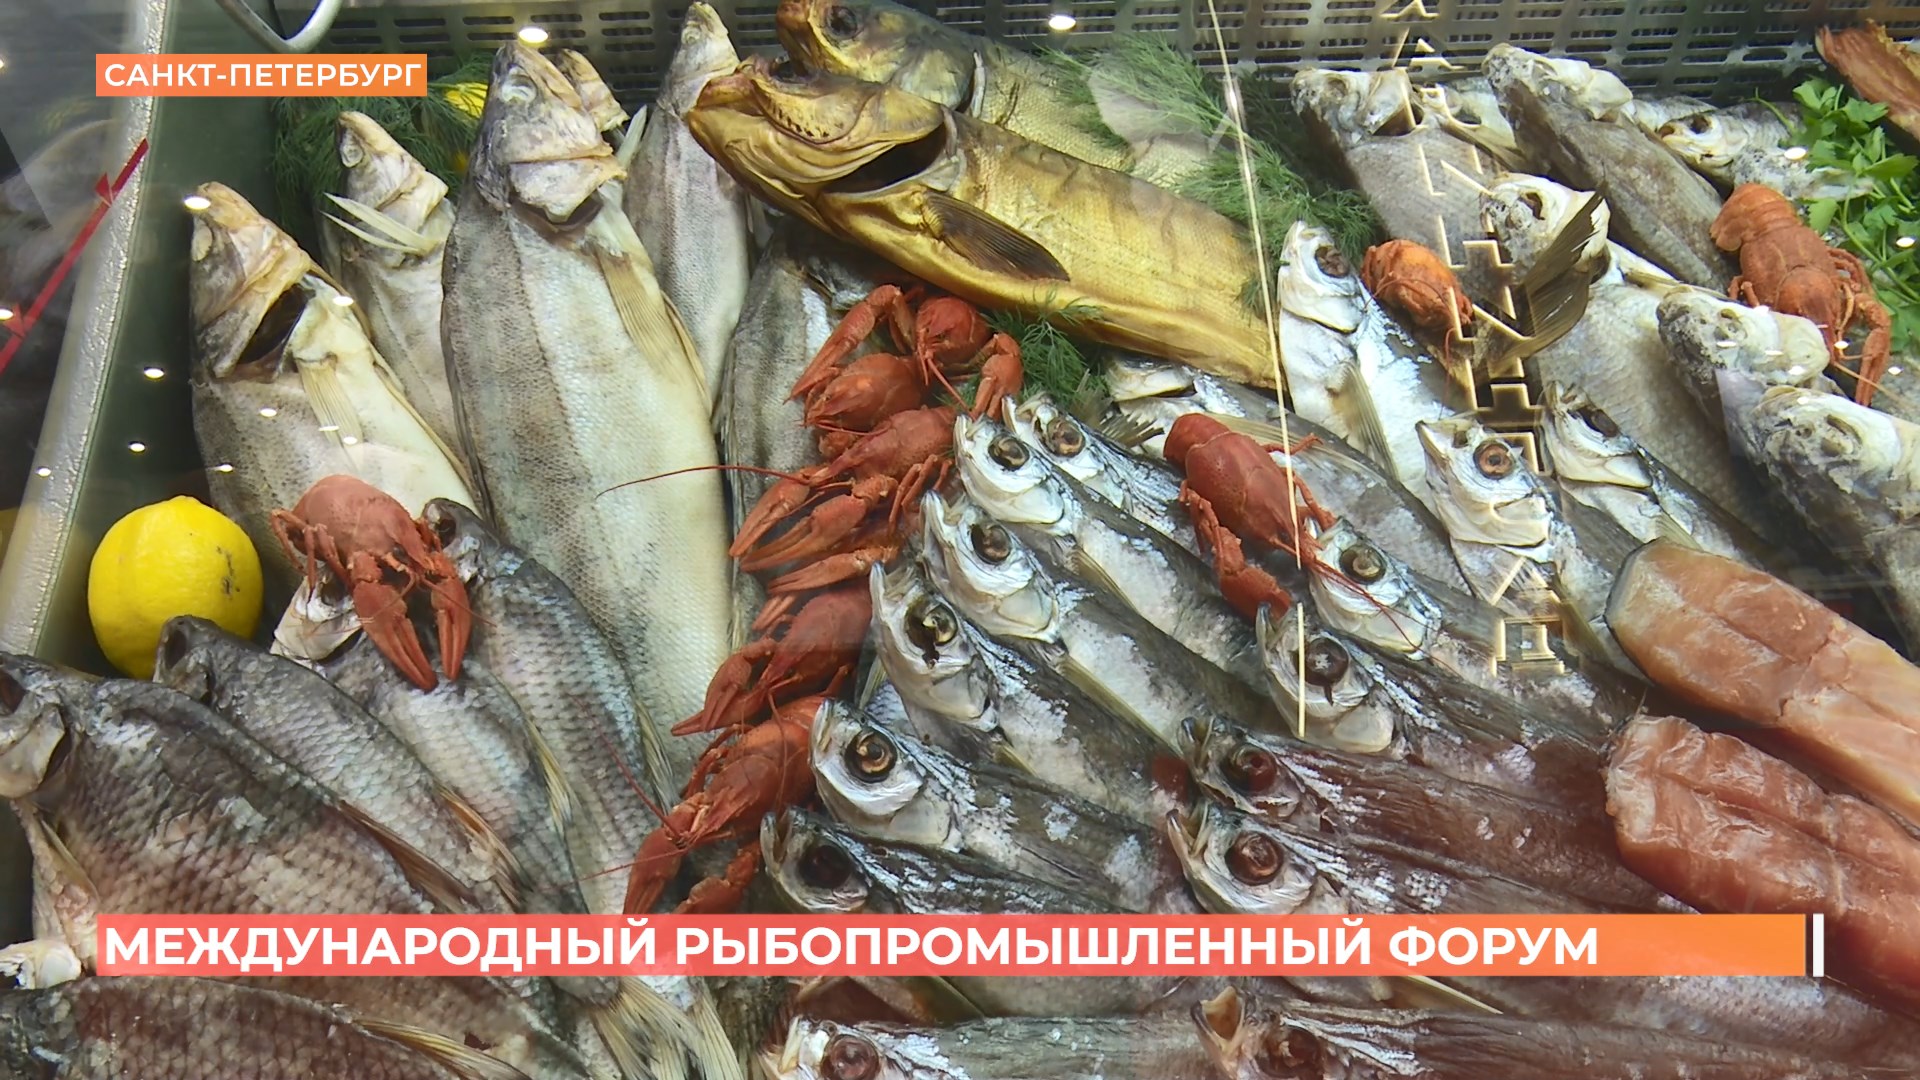 Комплекс предприятий по производству кормов для ценных рыб, выращиванию форели и осетровых создается в Ростовской области